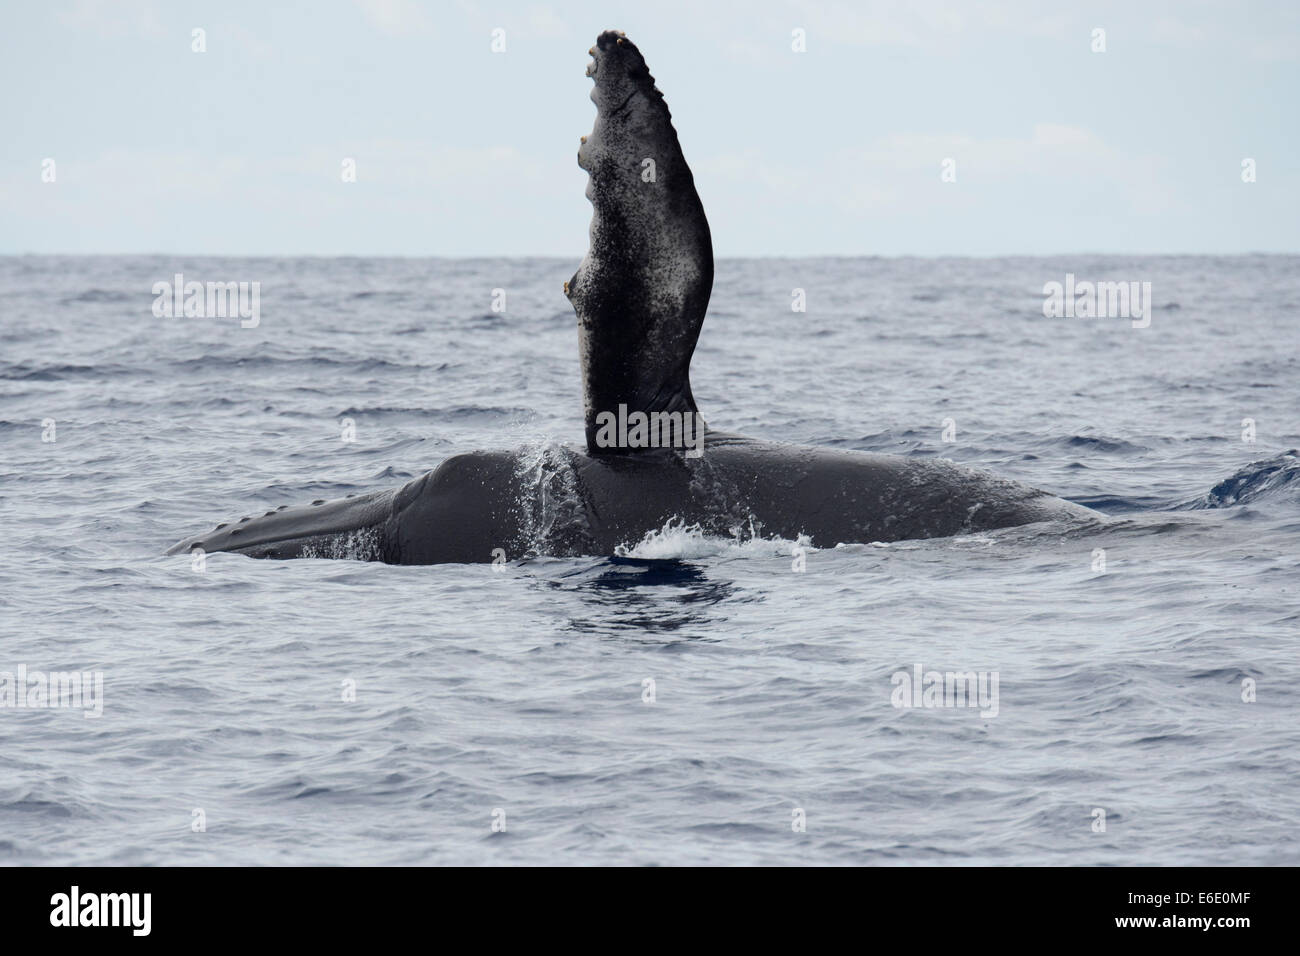 Humpback Whale polpaccio (Megaptera novaeangliae) affiorante con flipper sinistro sollevato. Azzorre, Oceano Atlantico. Foto Stock